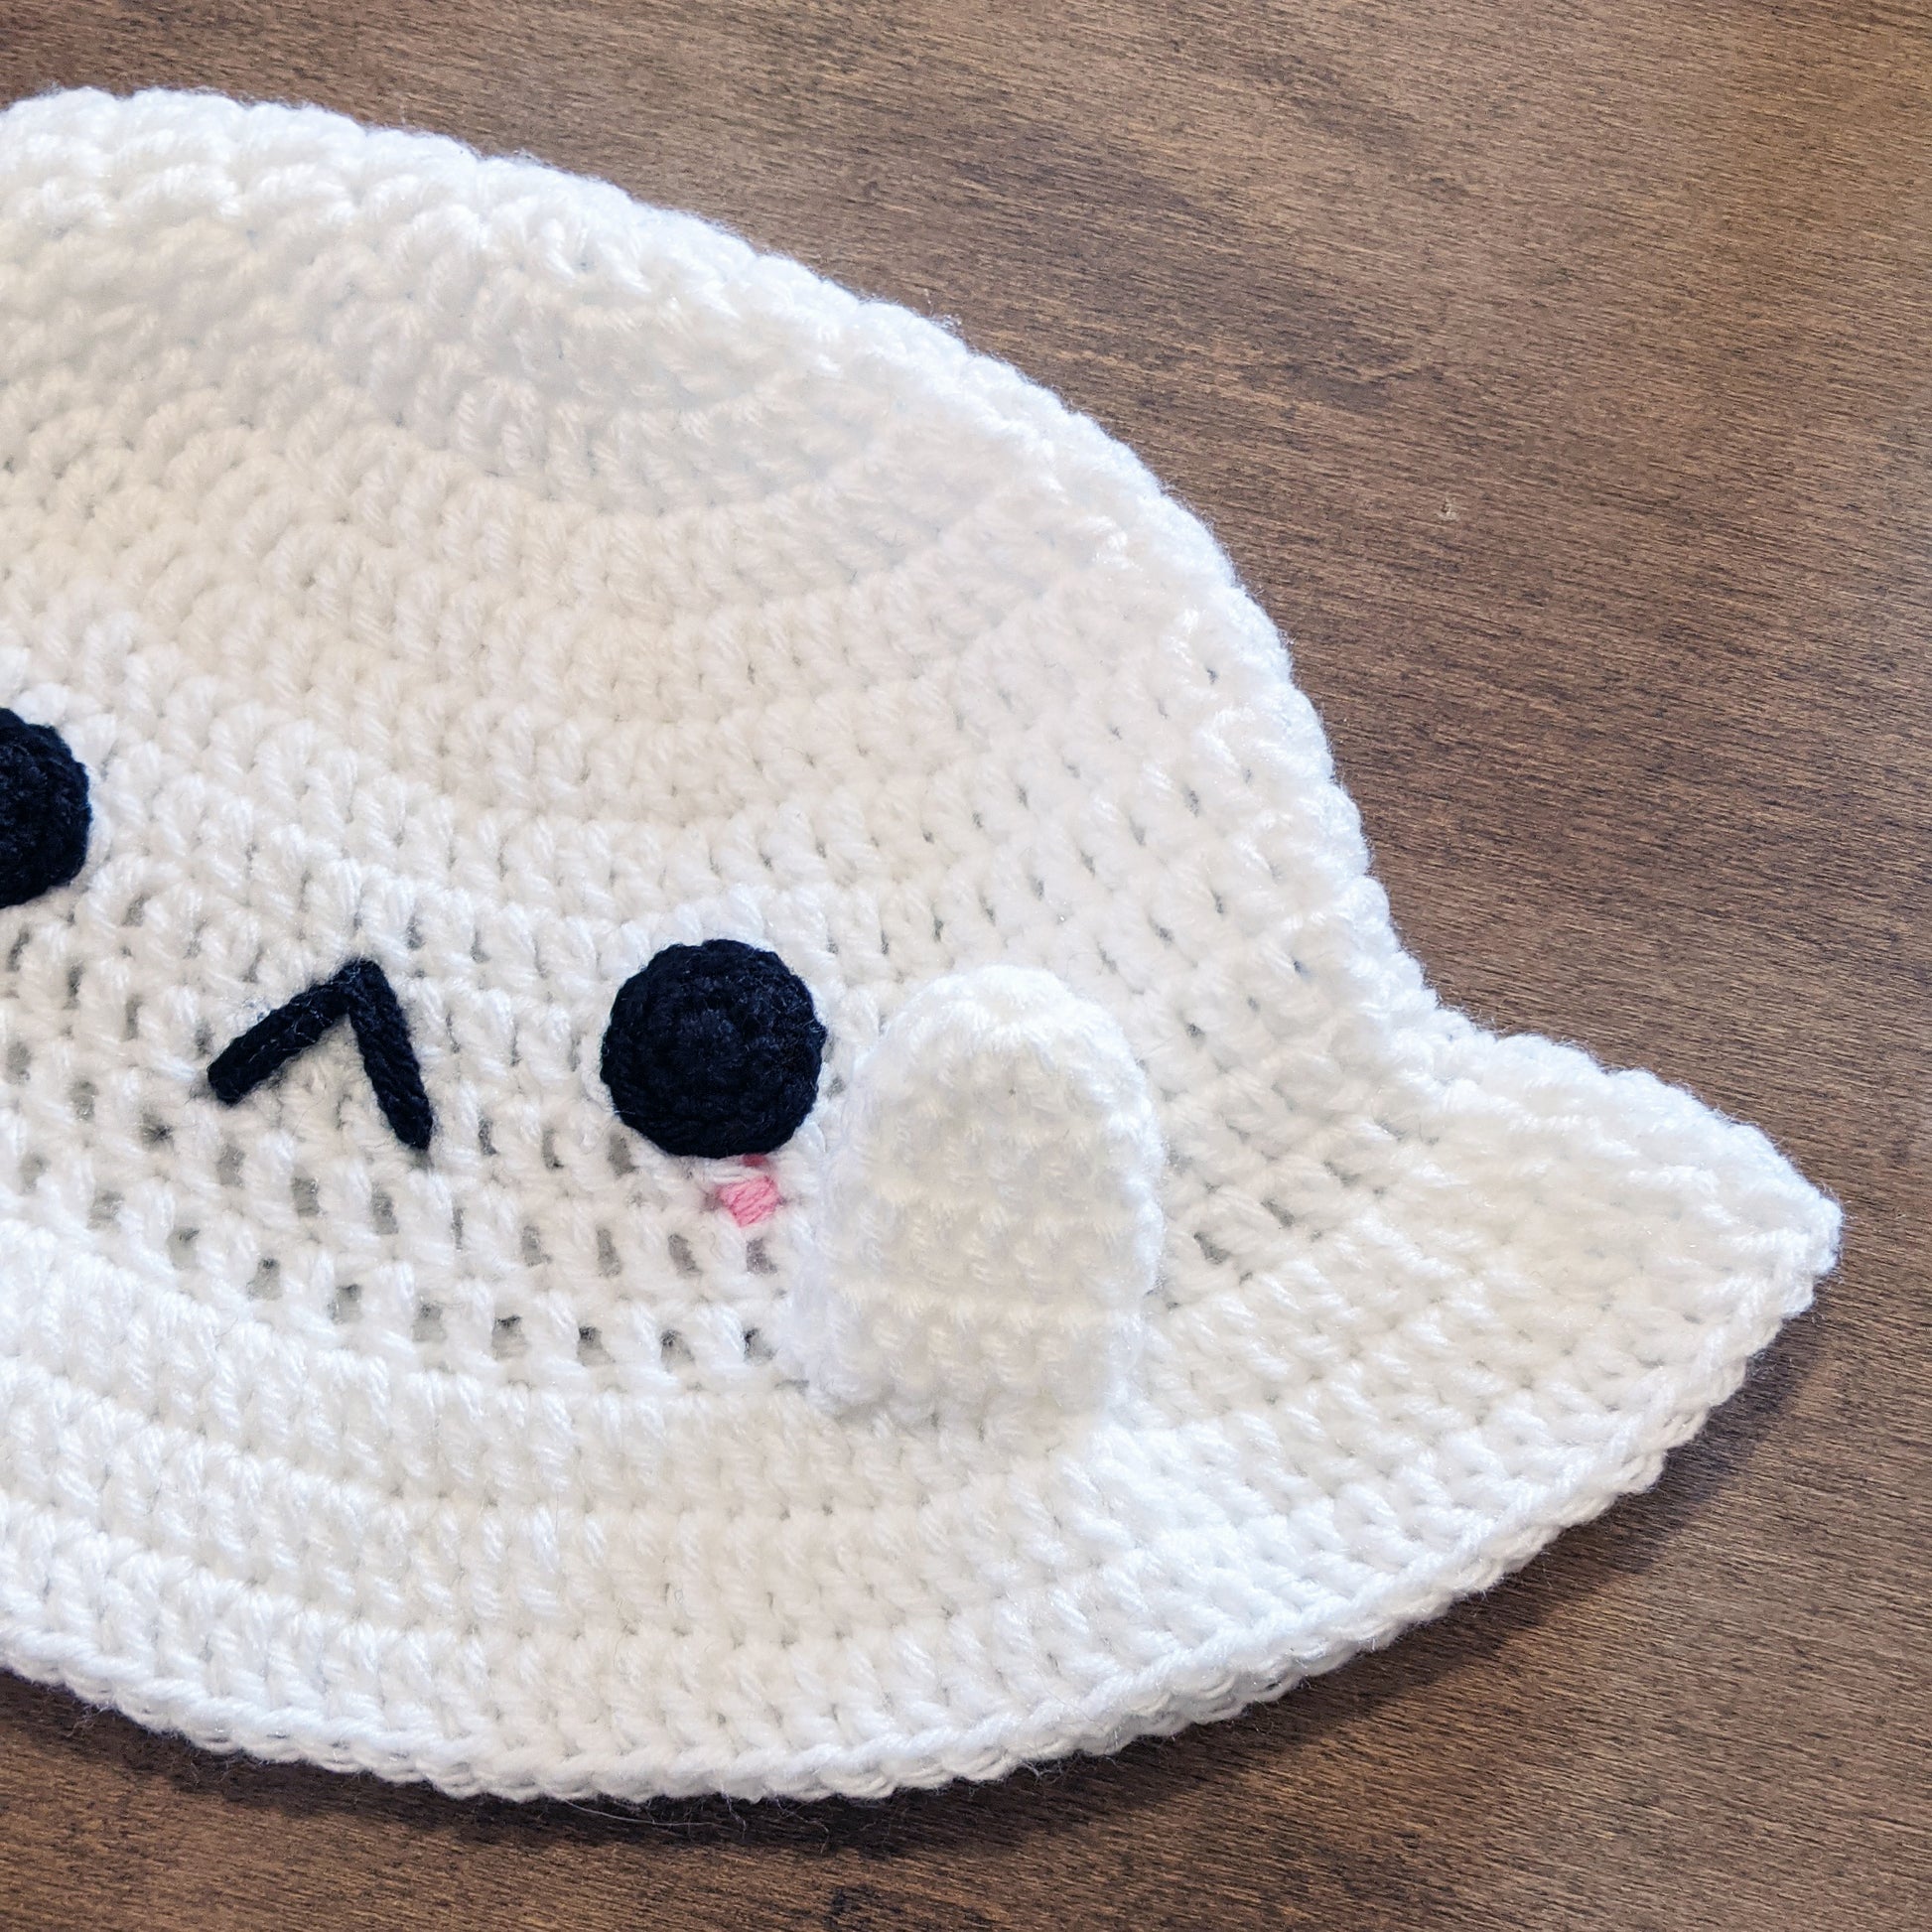 Blythe hat crochet white Ghost with black felt eyes for cust